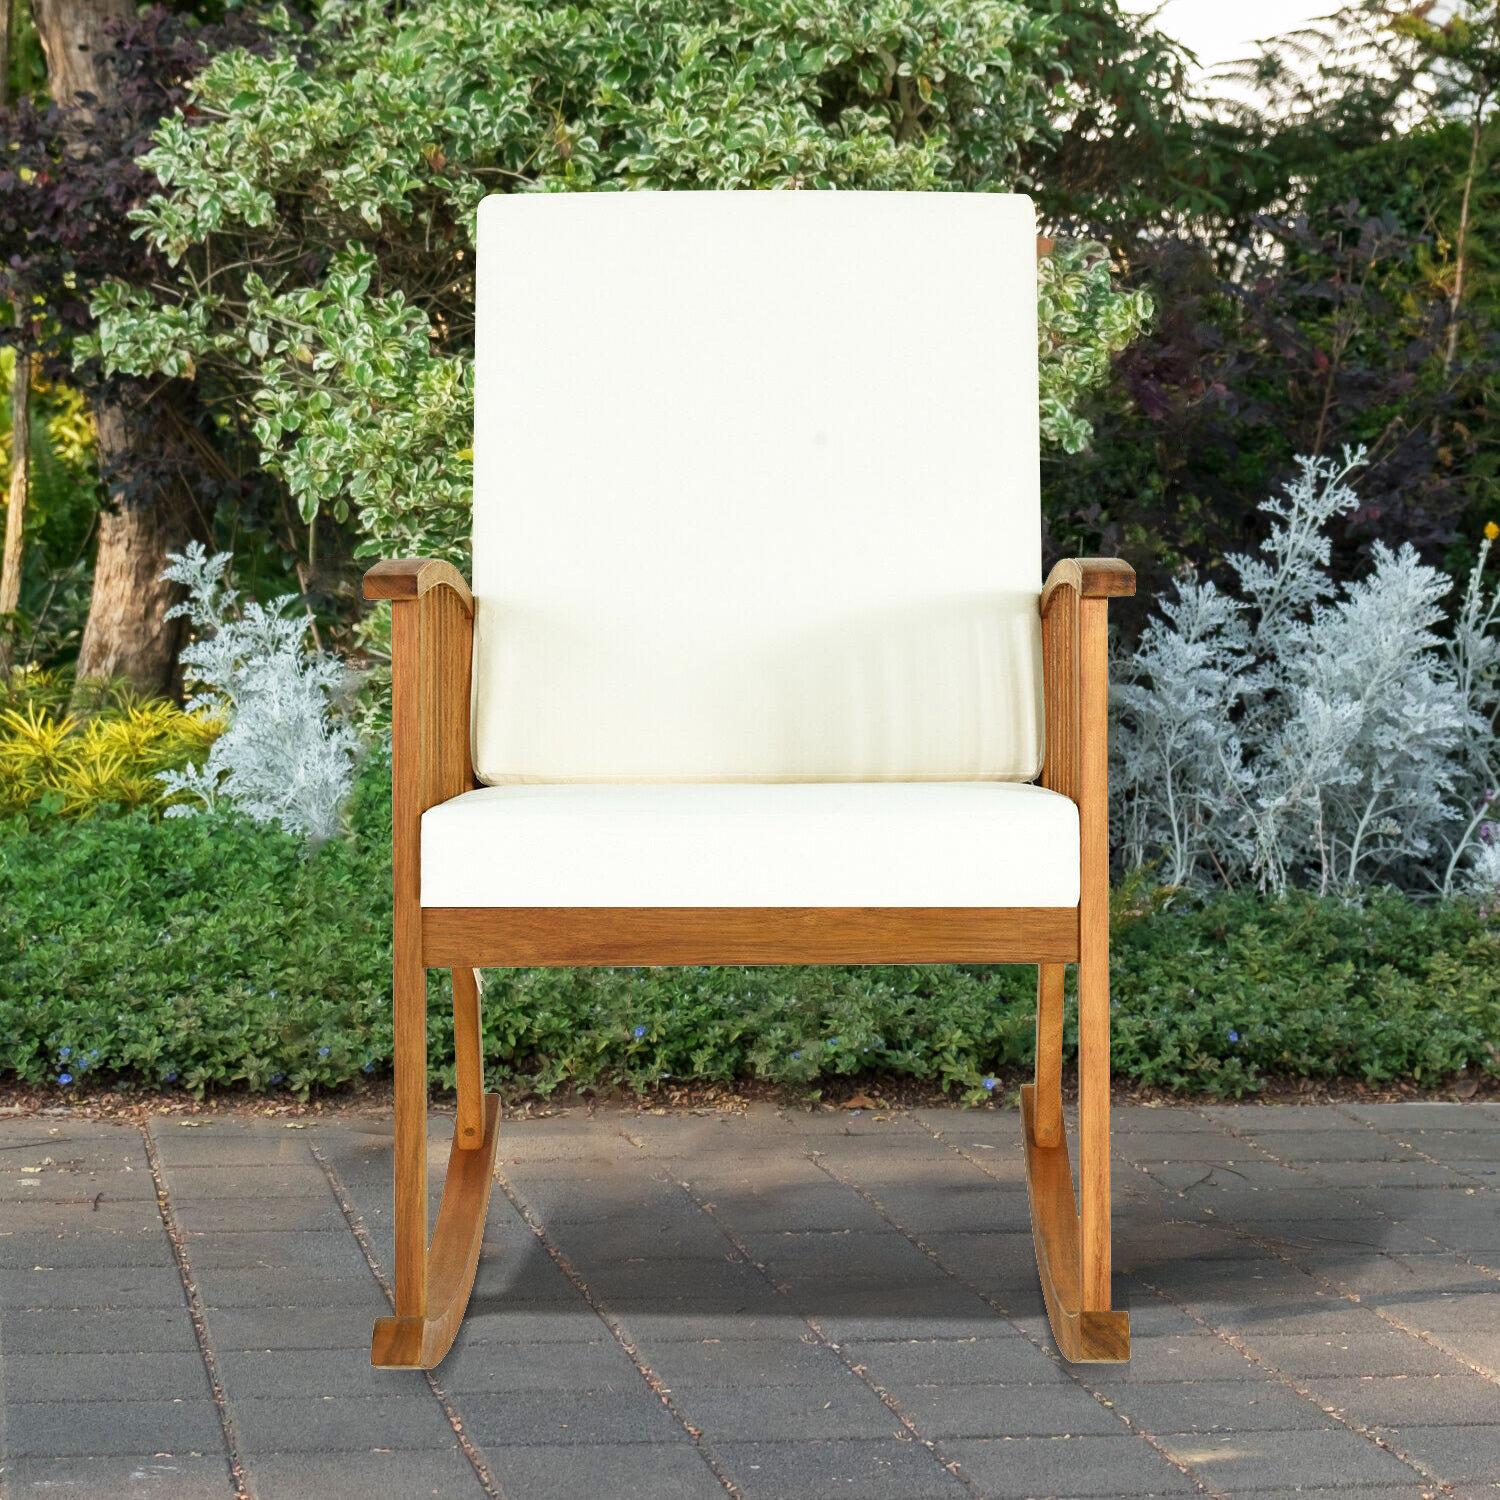 zehr outdoor garden rocking chair with cushions